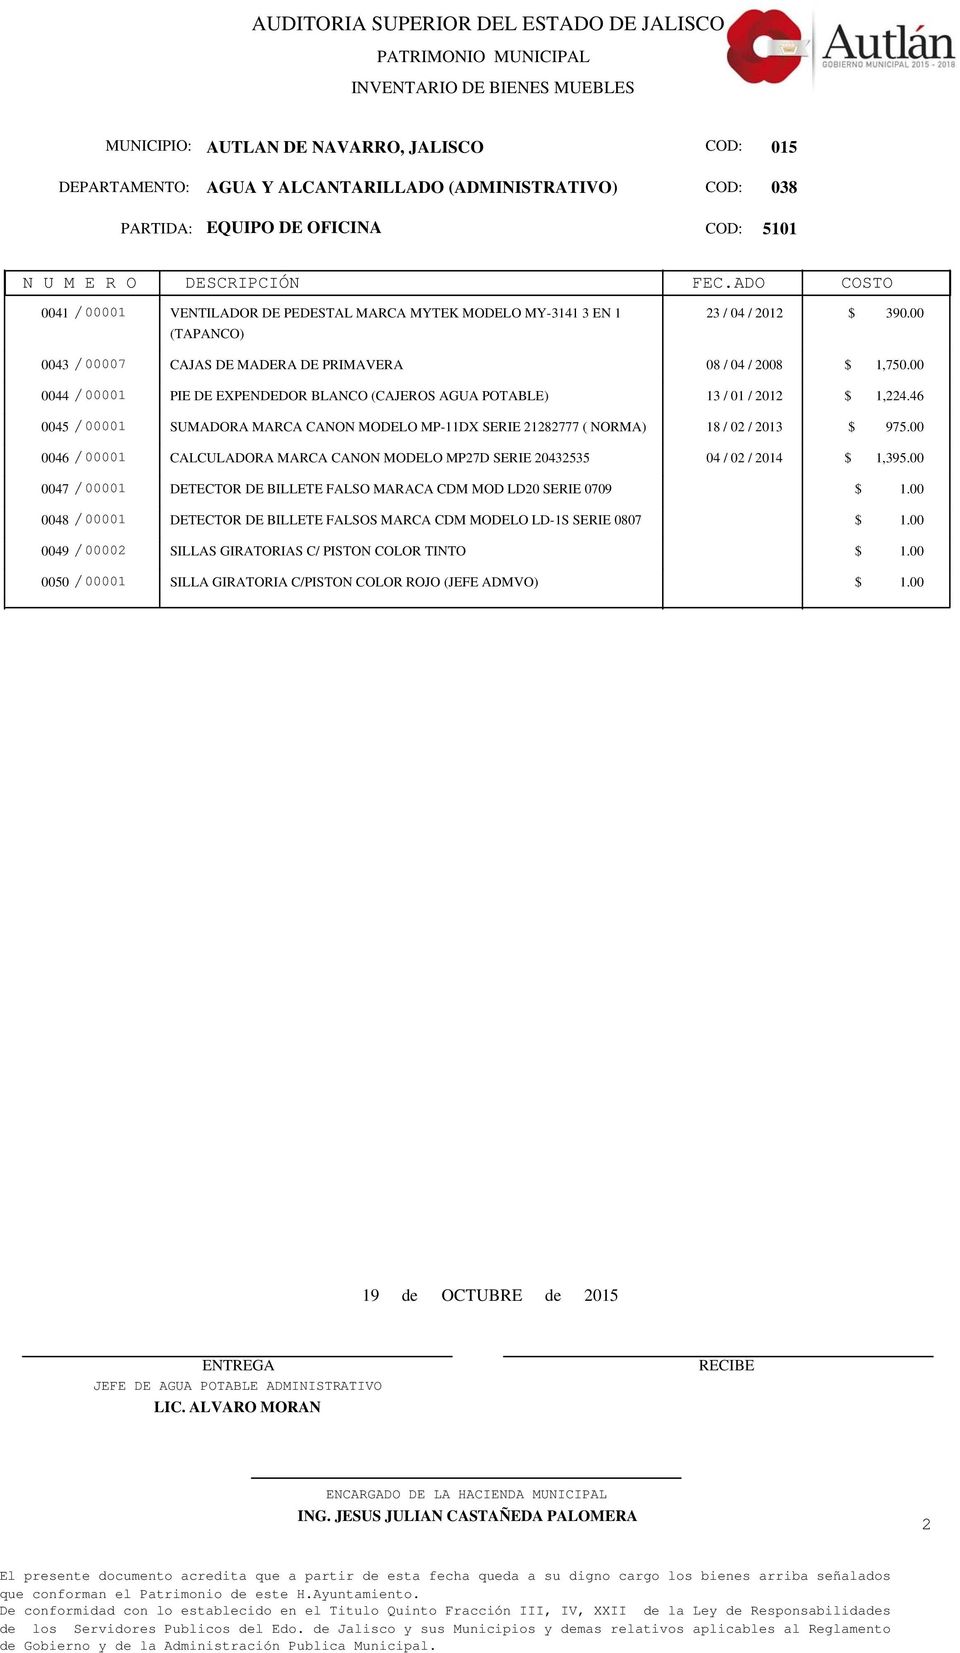 46 0045 /00001 SUMADORA MARCA CANON MODELO MP-11DX SERIE 21282777 ( NORMA) 18 / 02 / 2013 $ 975.